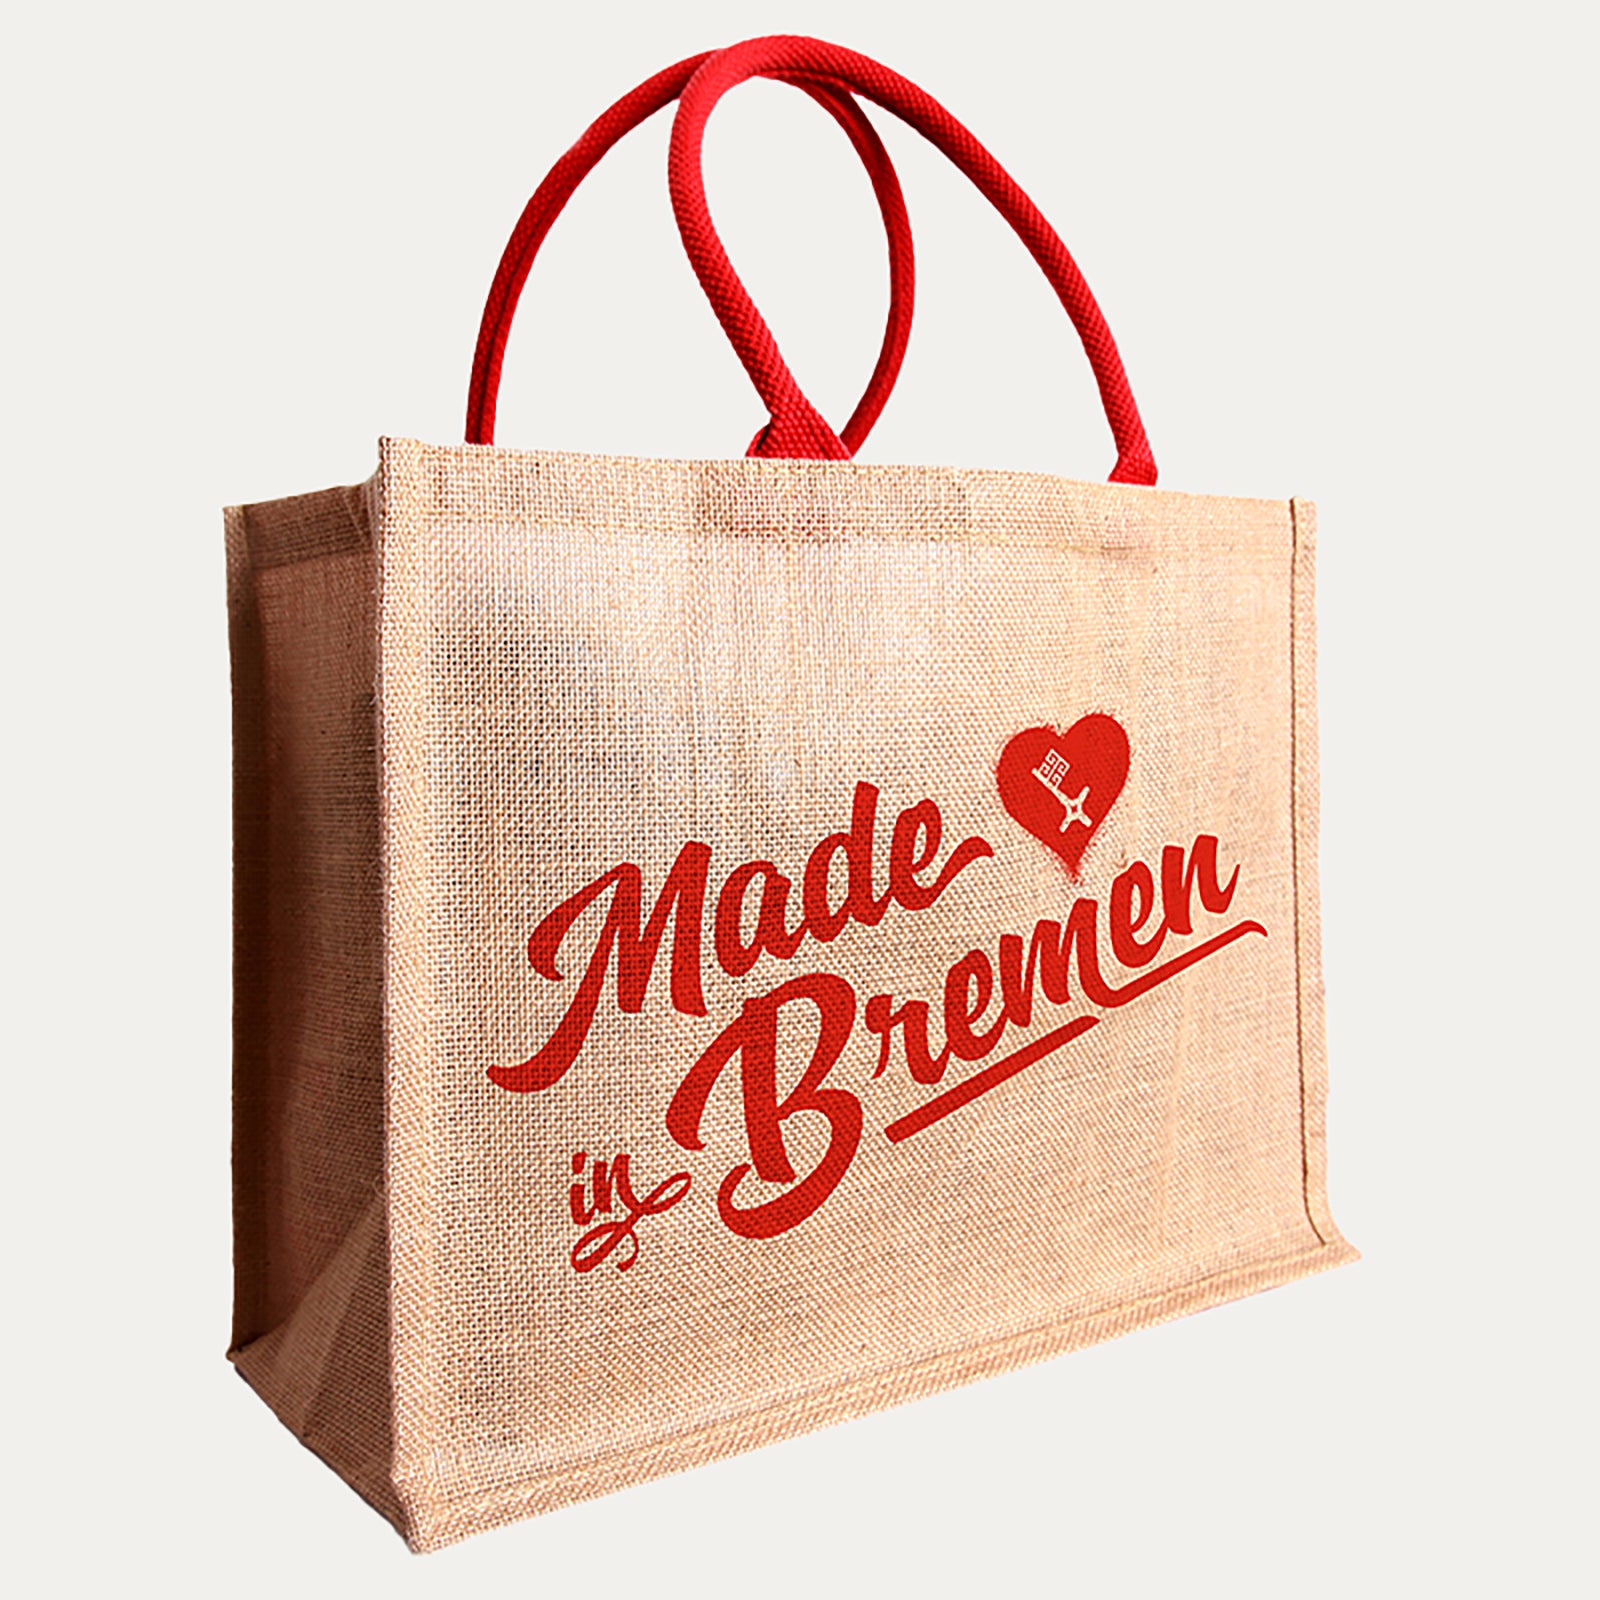 Bremer Shopper - Made in Bremen - Made in Bremen -